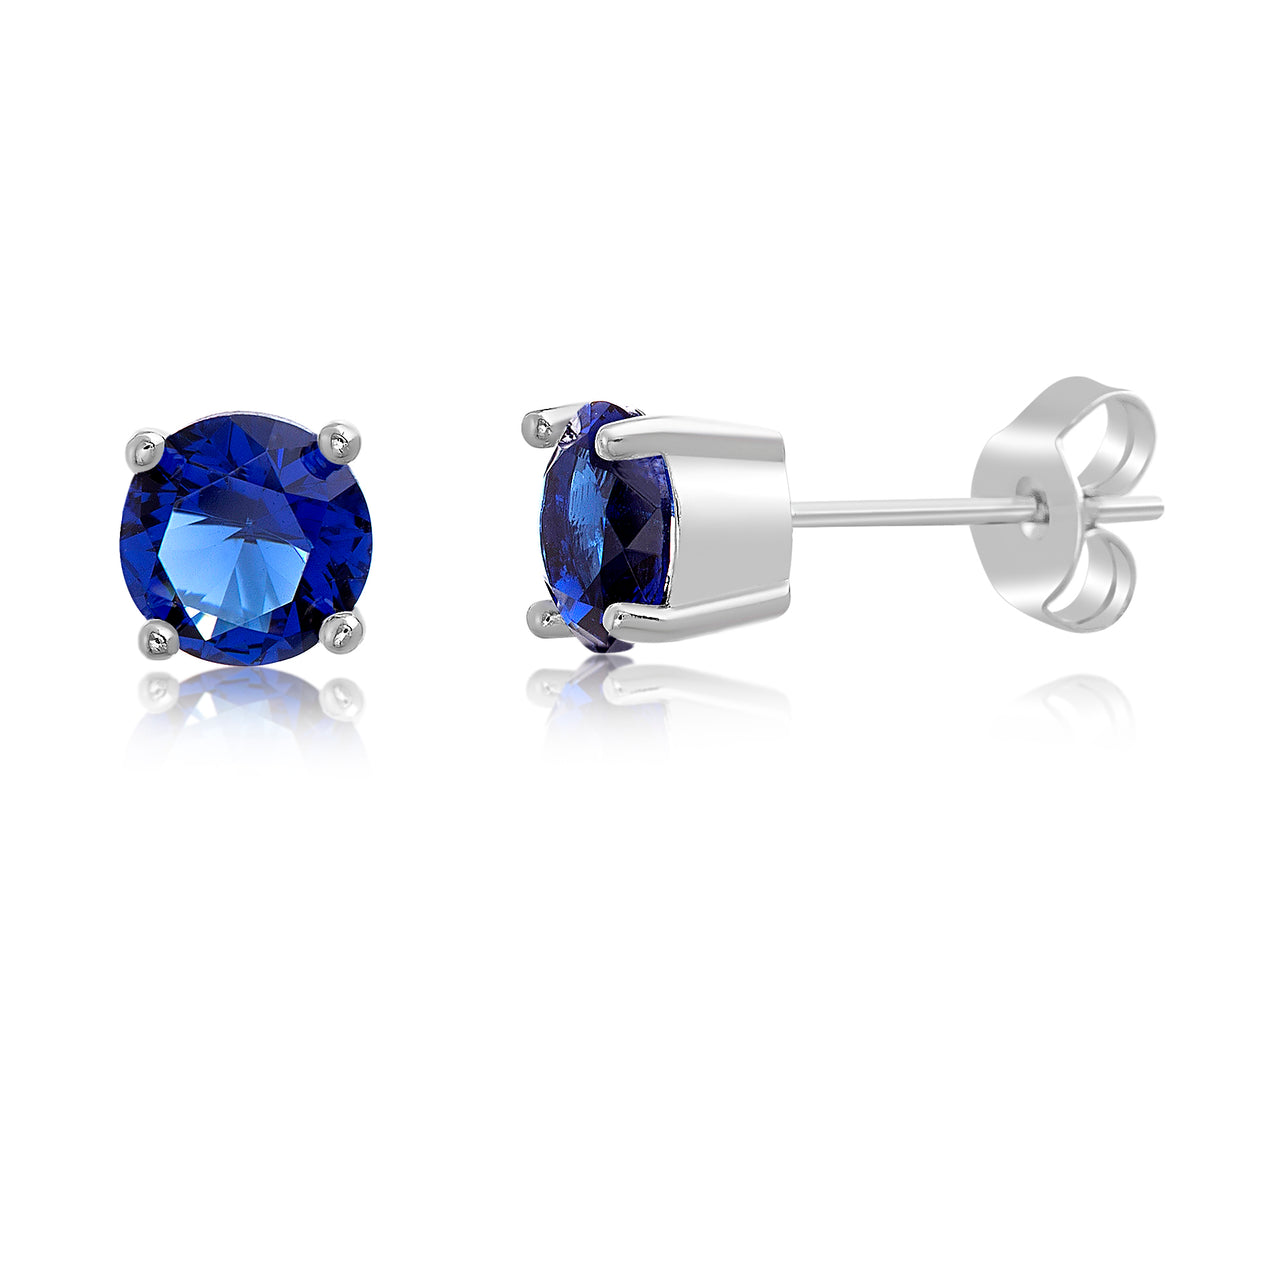 Lesa  Michele  Blue  Cubic  Zirconia  Stud  Earring  in  Brass